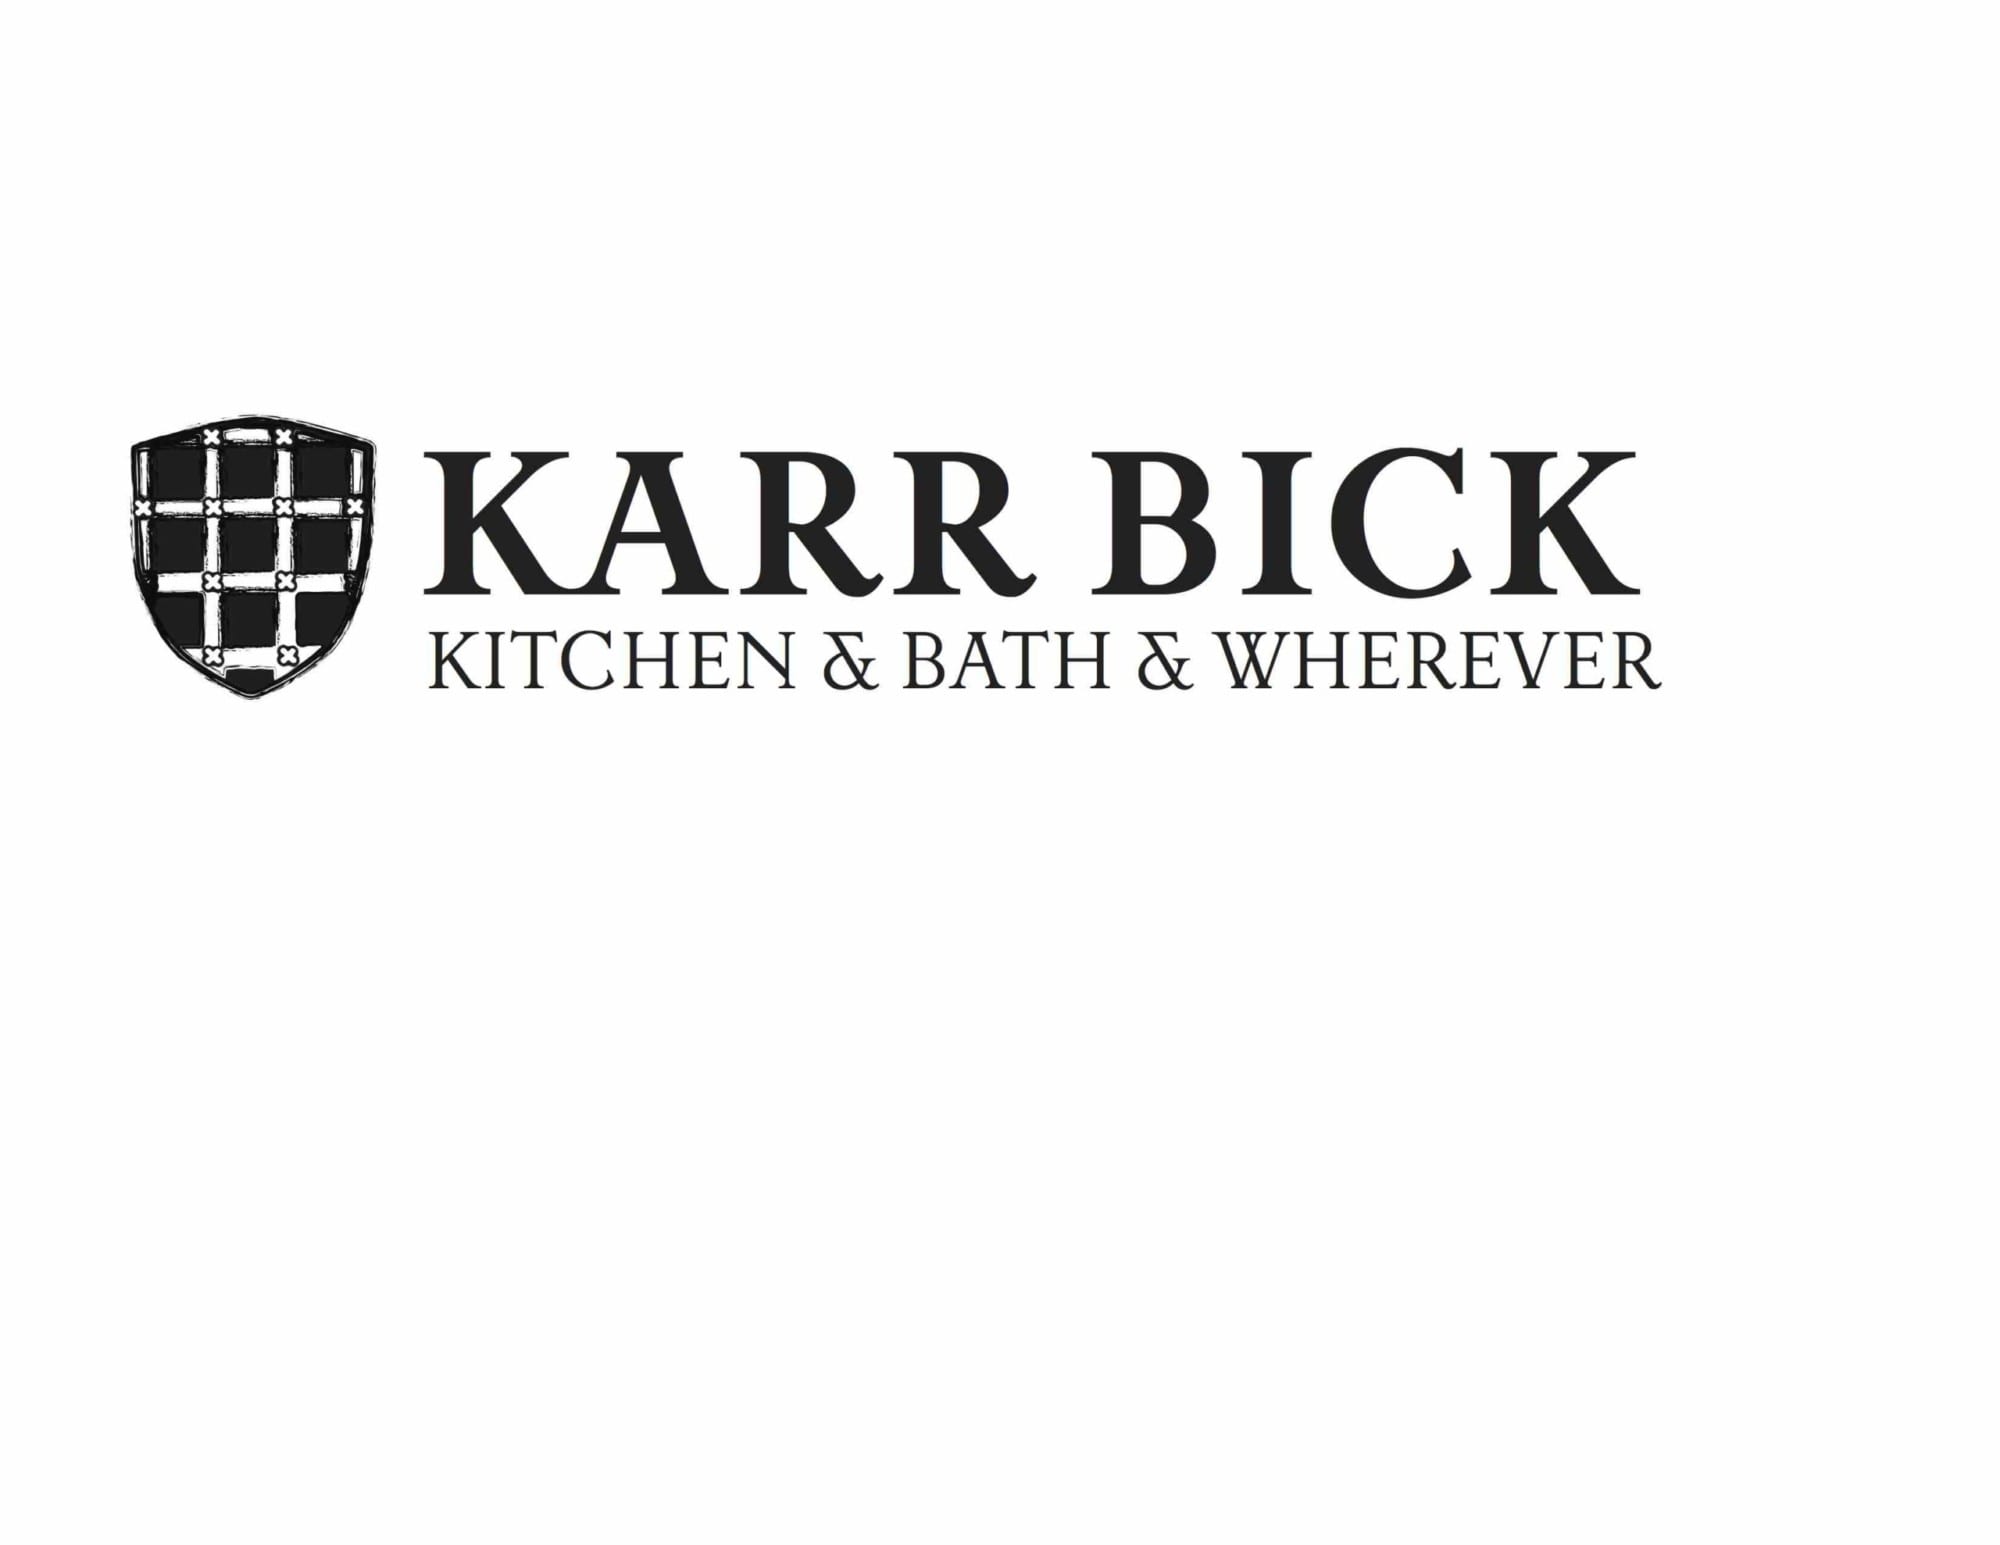 Karr Bick Kitchen & Bath & Wherever